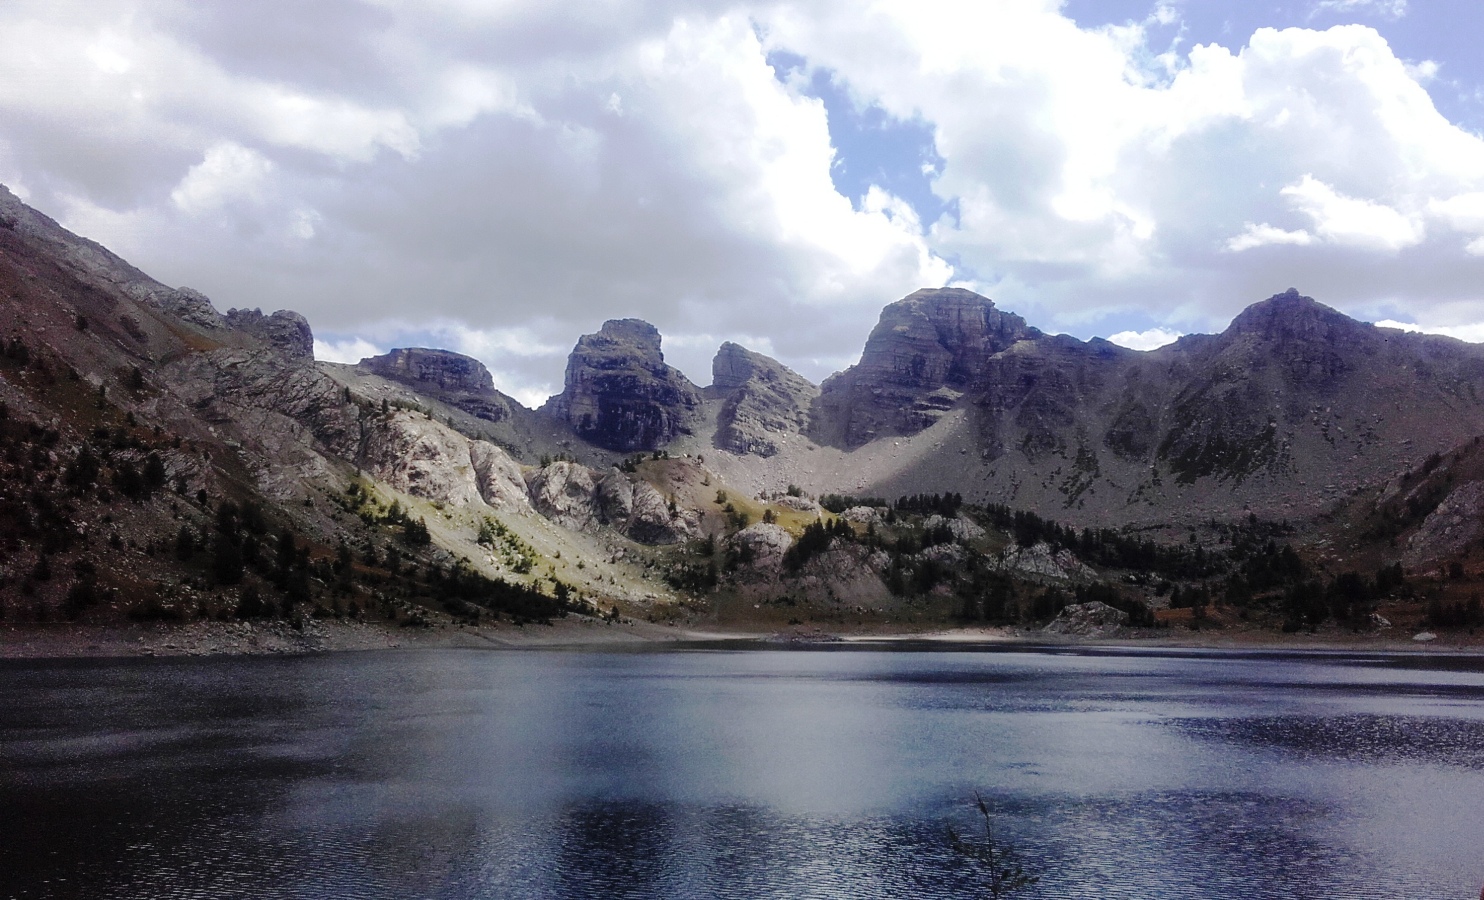 Au lac d’Allos, les visiteurs ont été sensibilisés aux dangers de la montagne